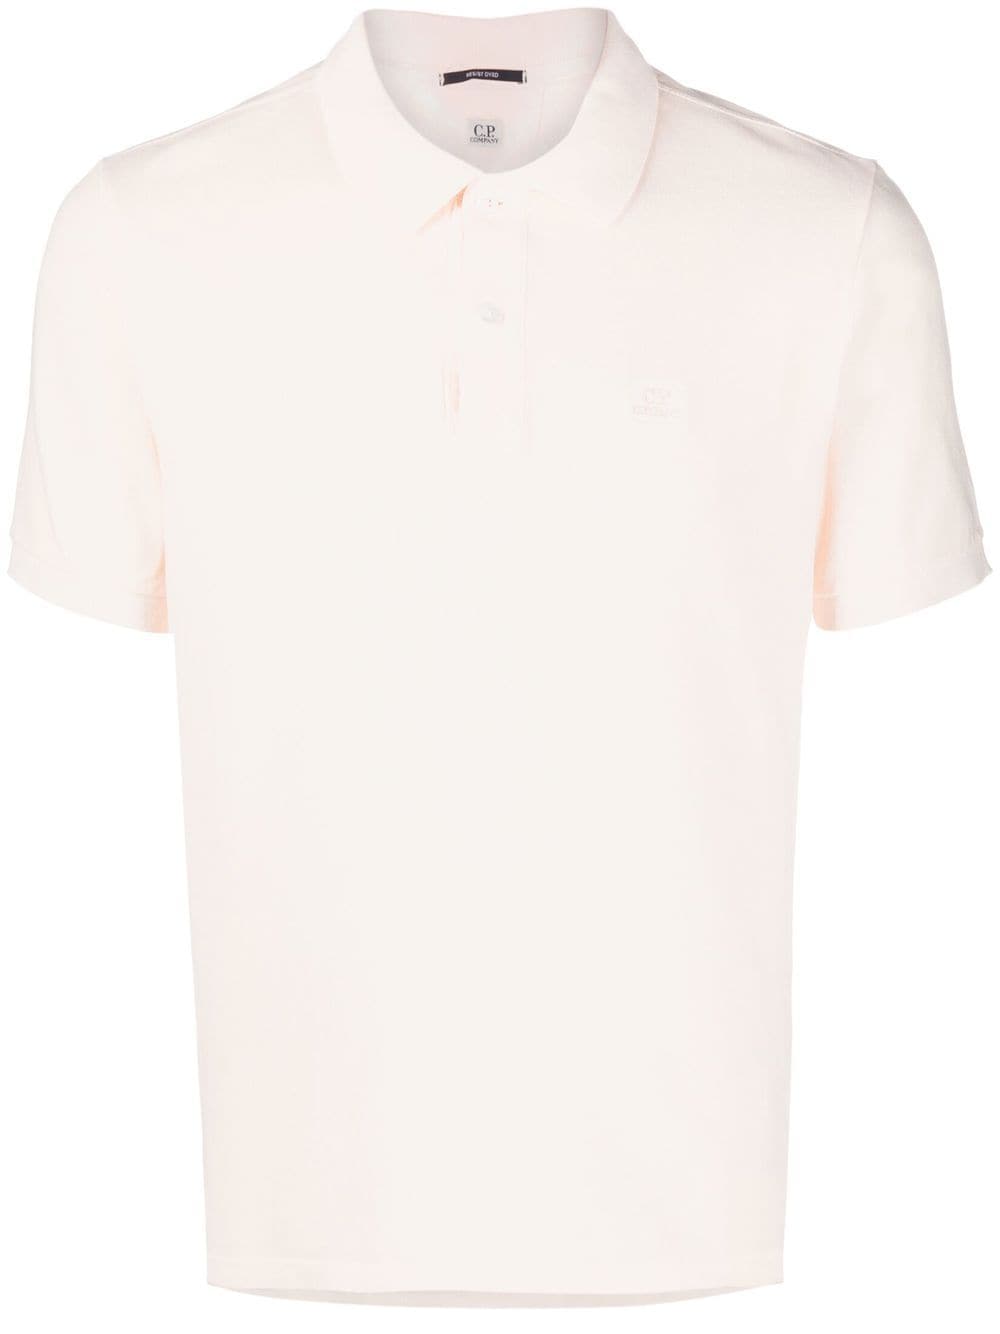 C.P. Company embroidered logo cotton polo shirt - Neutrals von C.P. Company